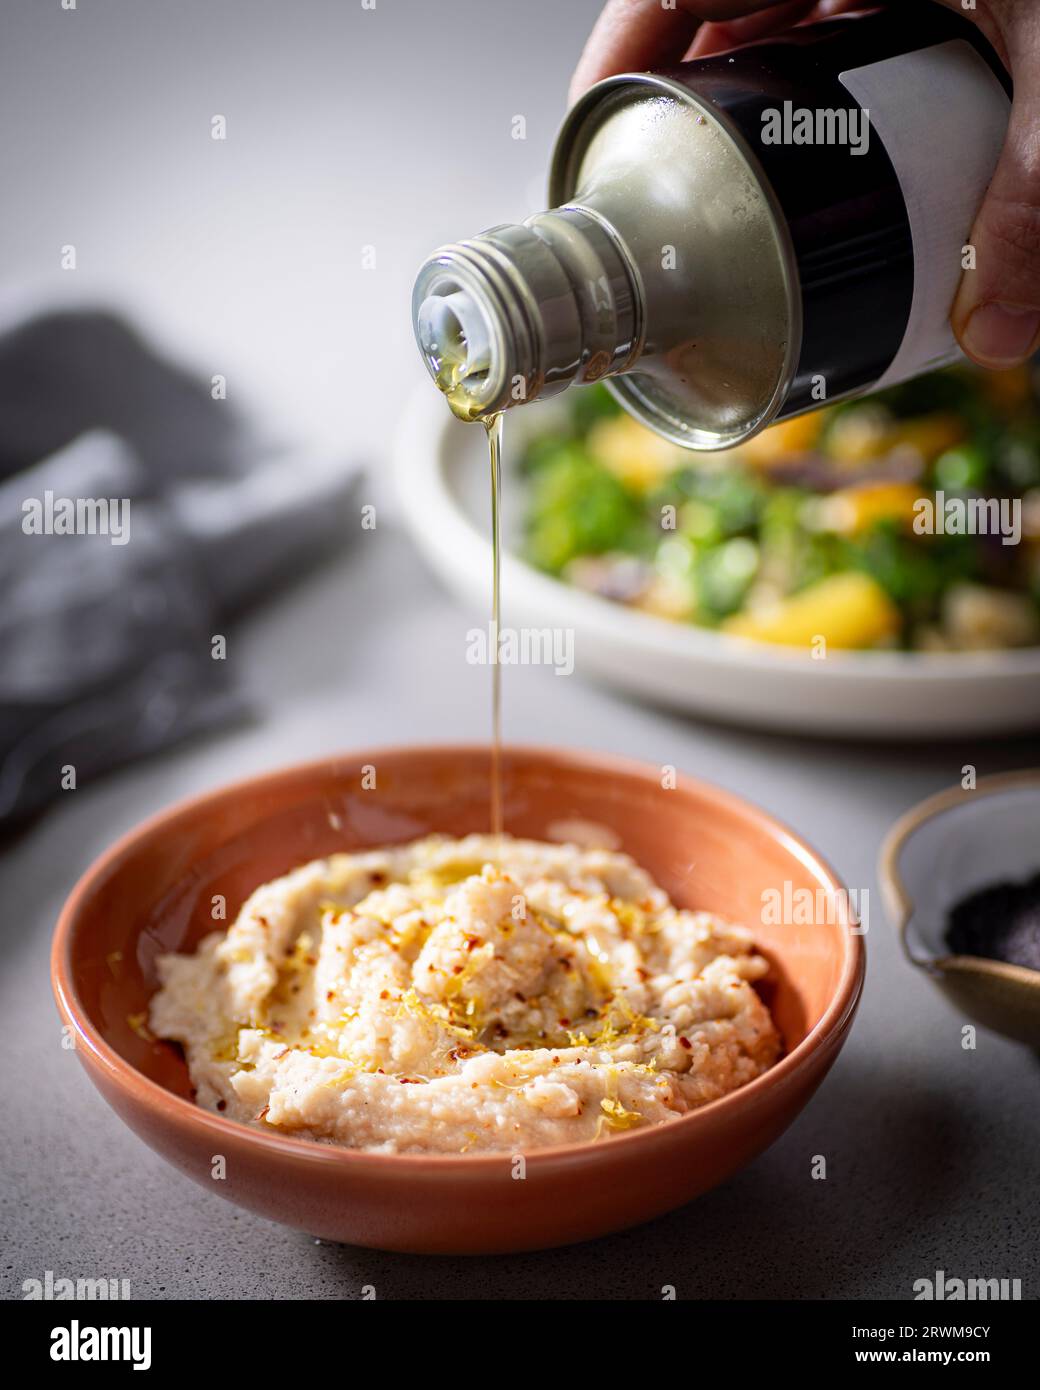 l'huile d'olive dorée est délicatement versée d'une bouteille dans un bol rempli de houmous crémeux. En arrière-plan, une assiette de légumes frais ajoute à la Banque D'Images